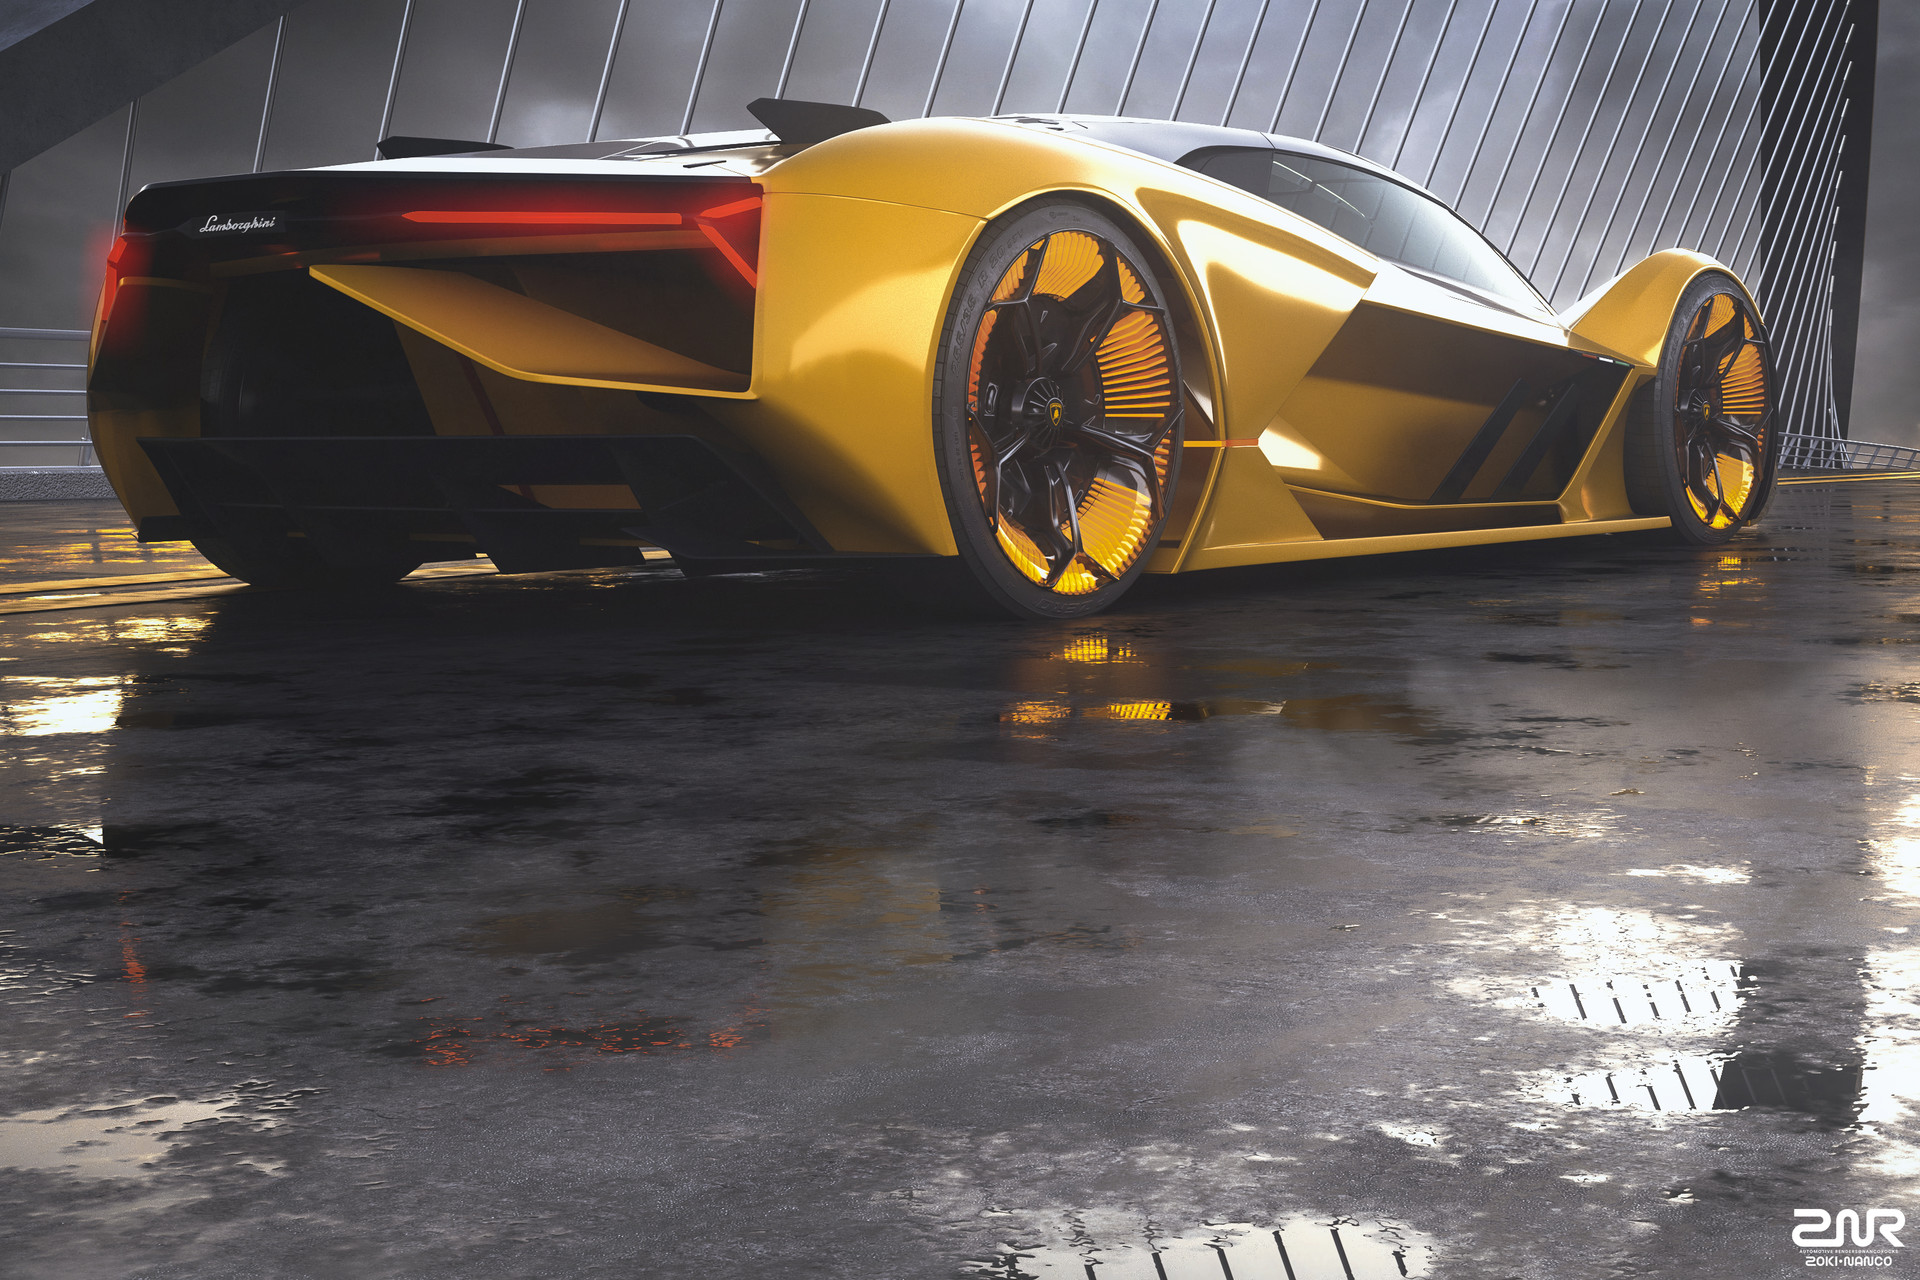 ArtStation - UE4 Ray Tracing, Lamborghini Terzo Millennio